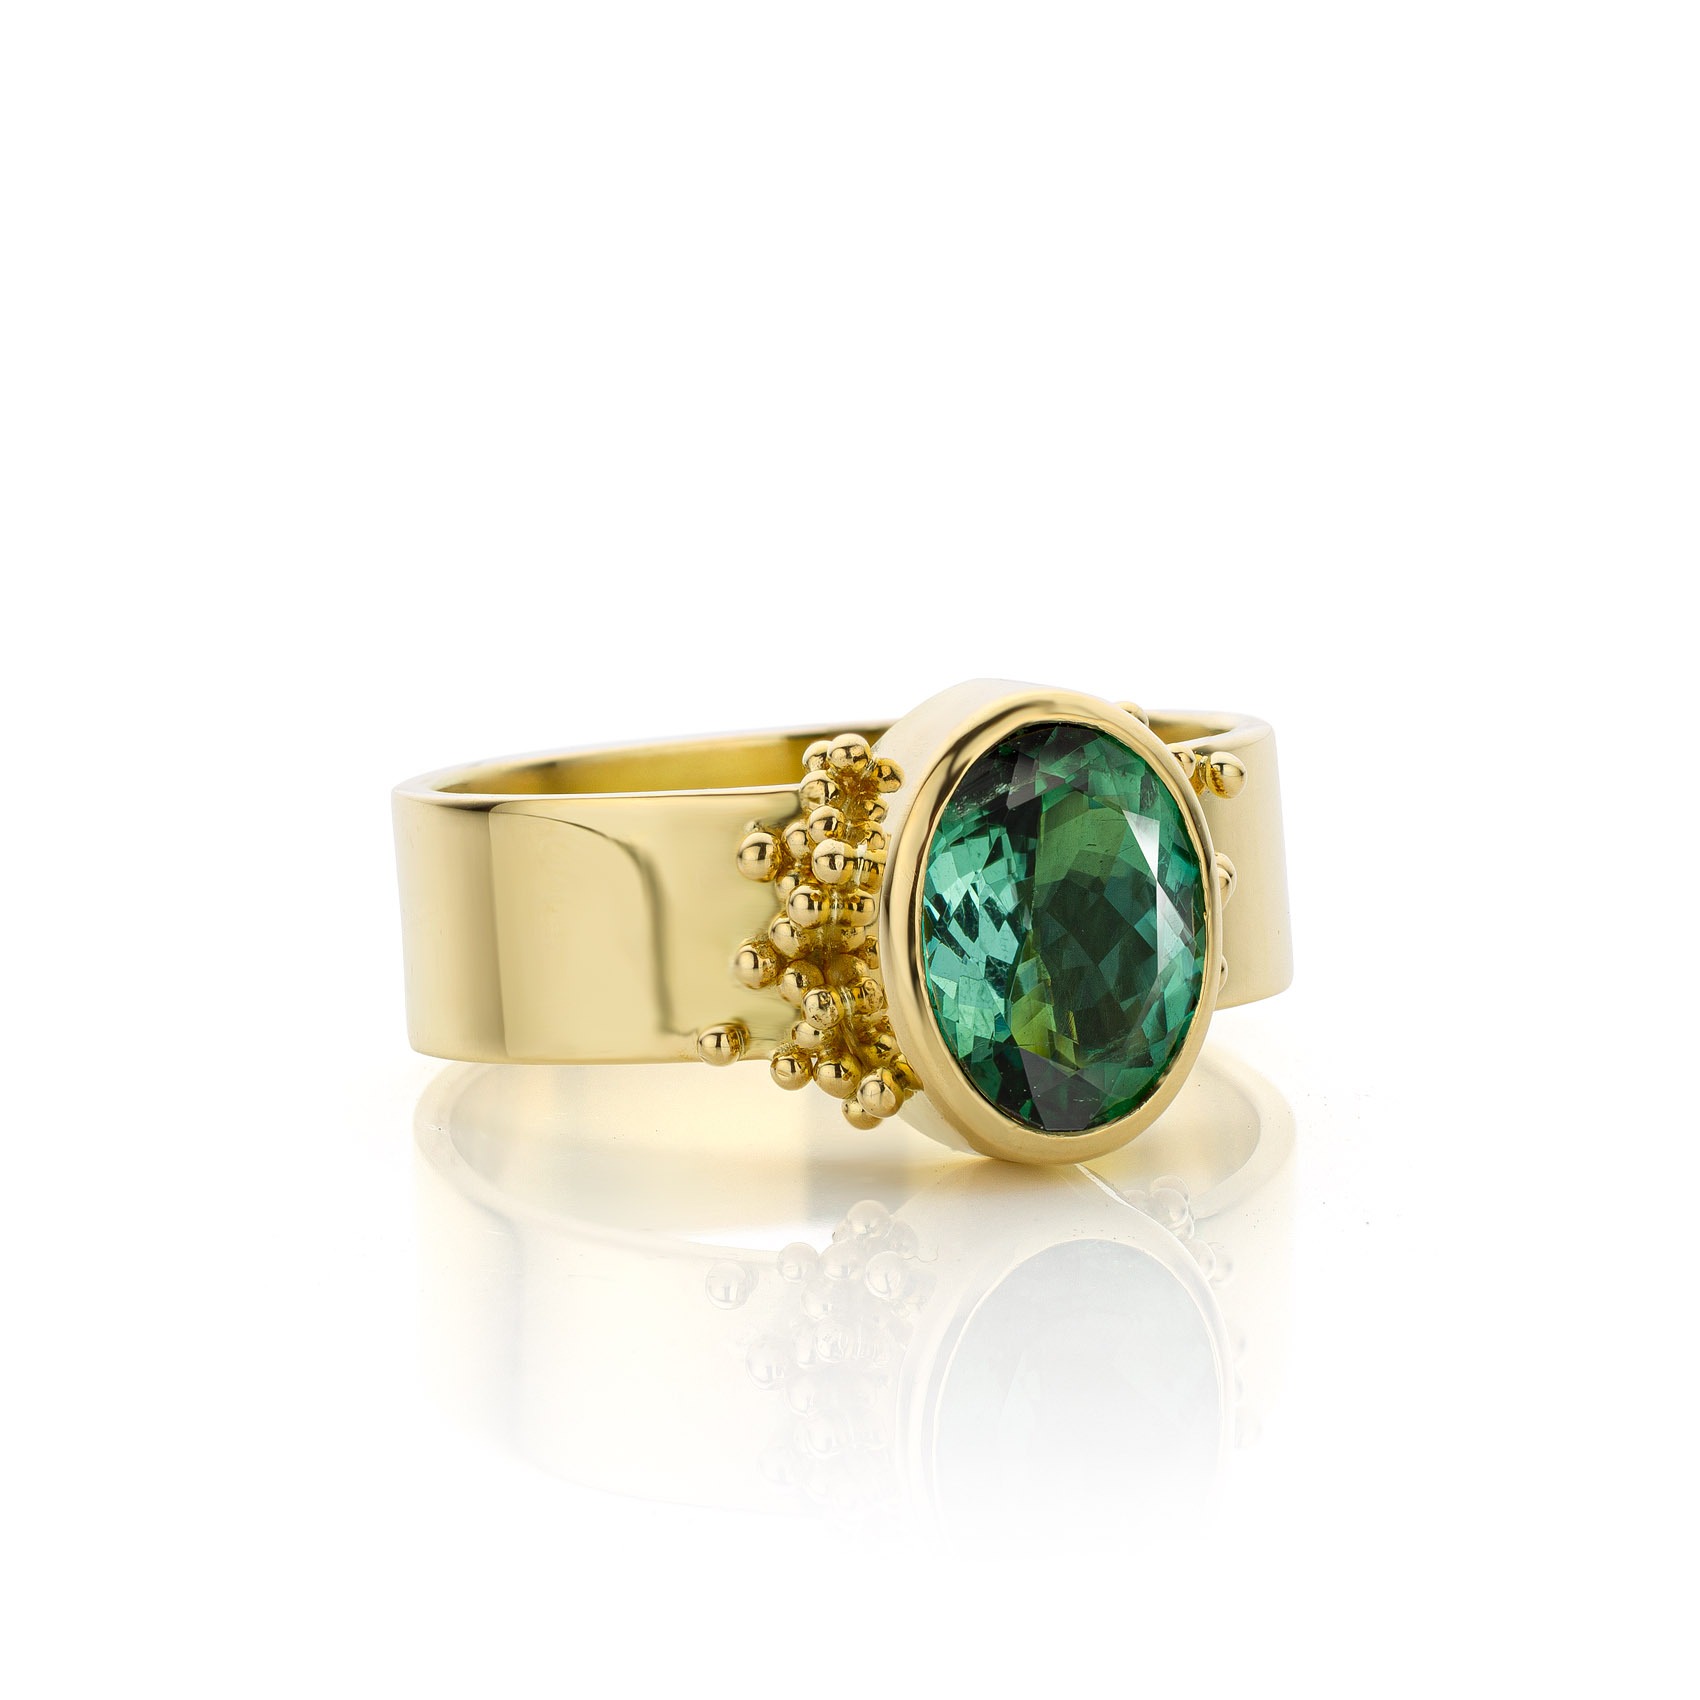 Partina City Dubbelzinnig Achteruit 18kt gouden ring met groene toermalijn | Sarah Kobak Edelsmid